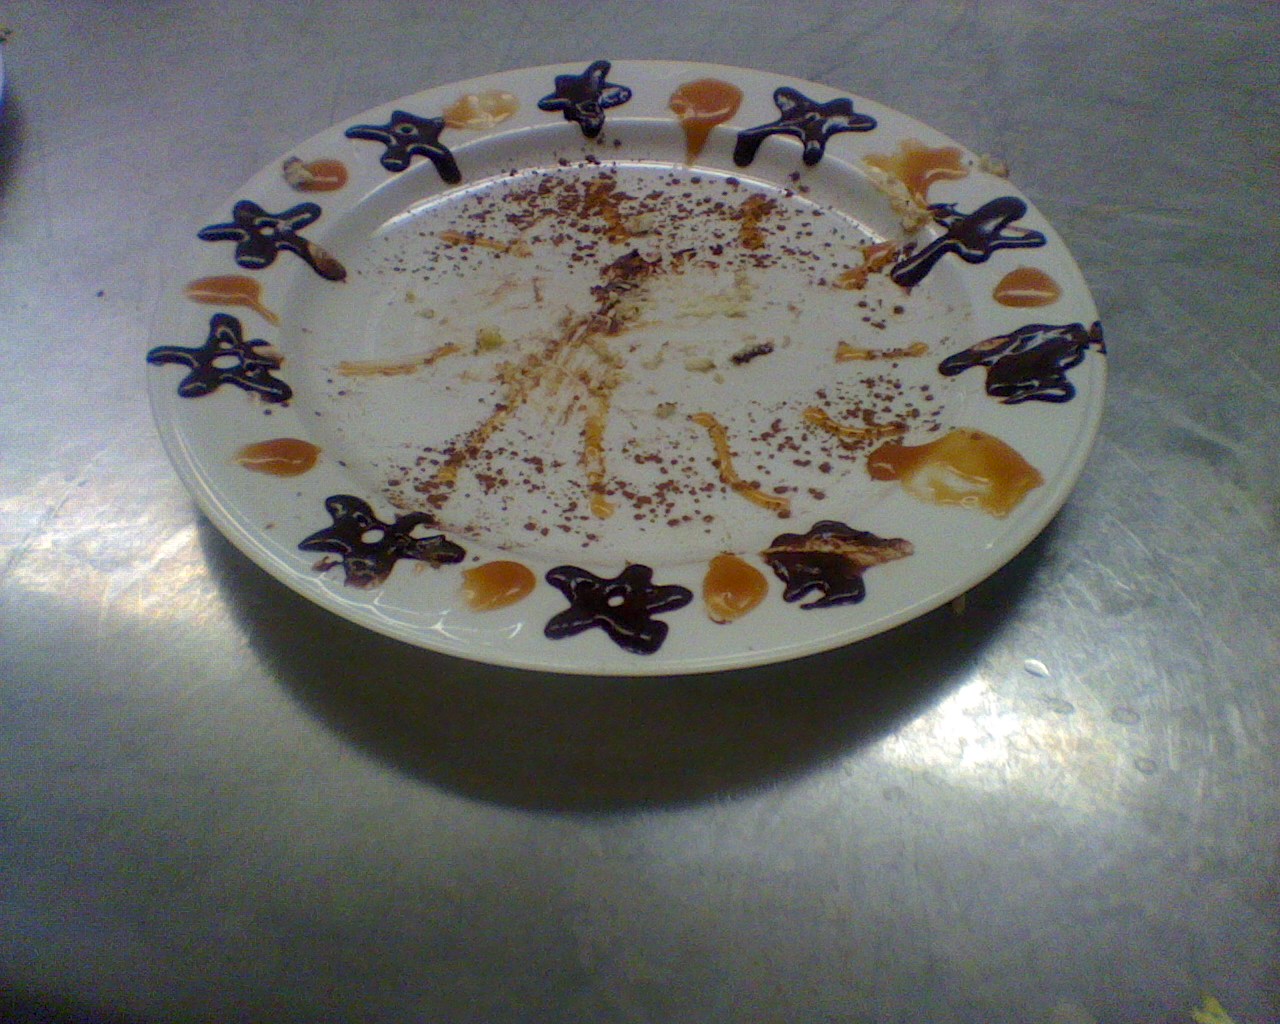 Dessert Plate